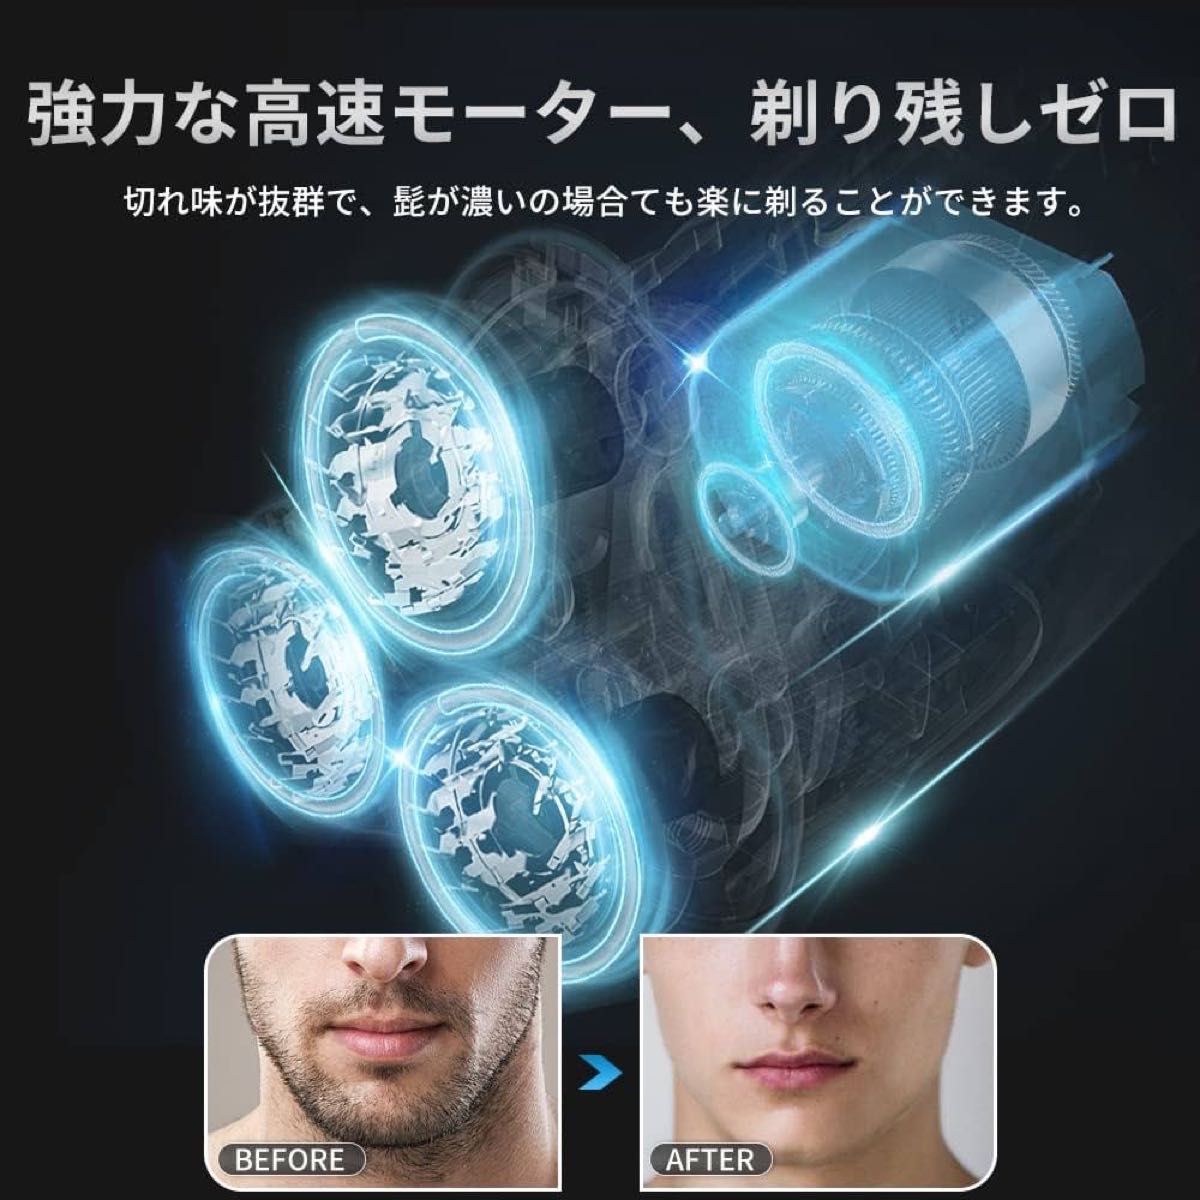 【夜間限定タイムセール】メンズ 電気シェーバー 電気シェーバー 髭剃り 自動研磨機能 USB充電式